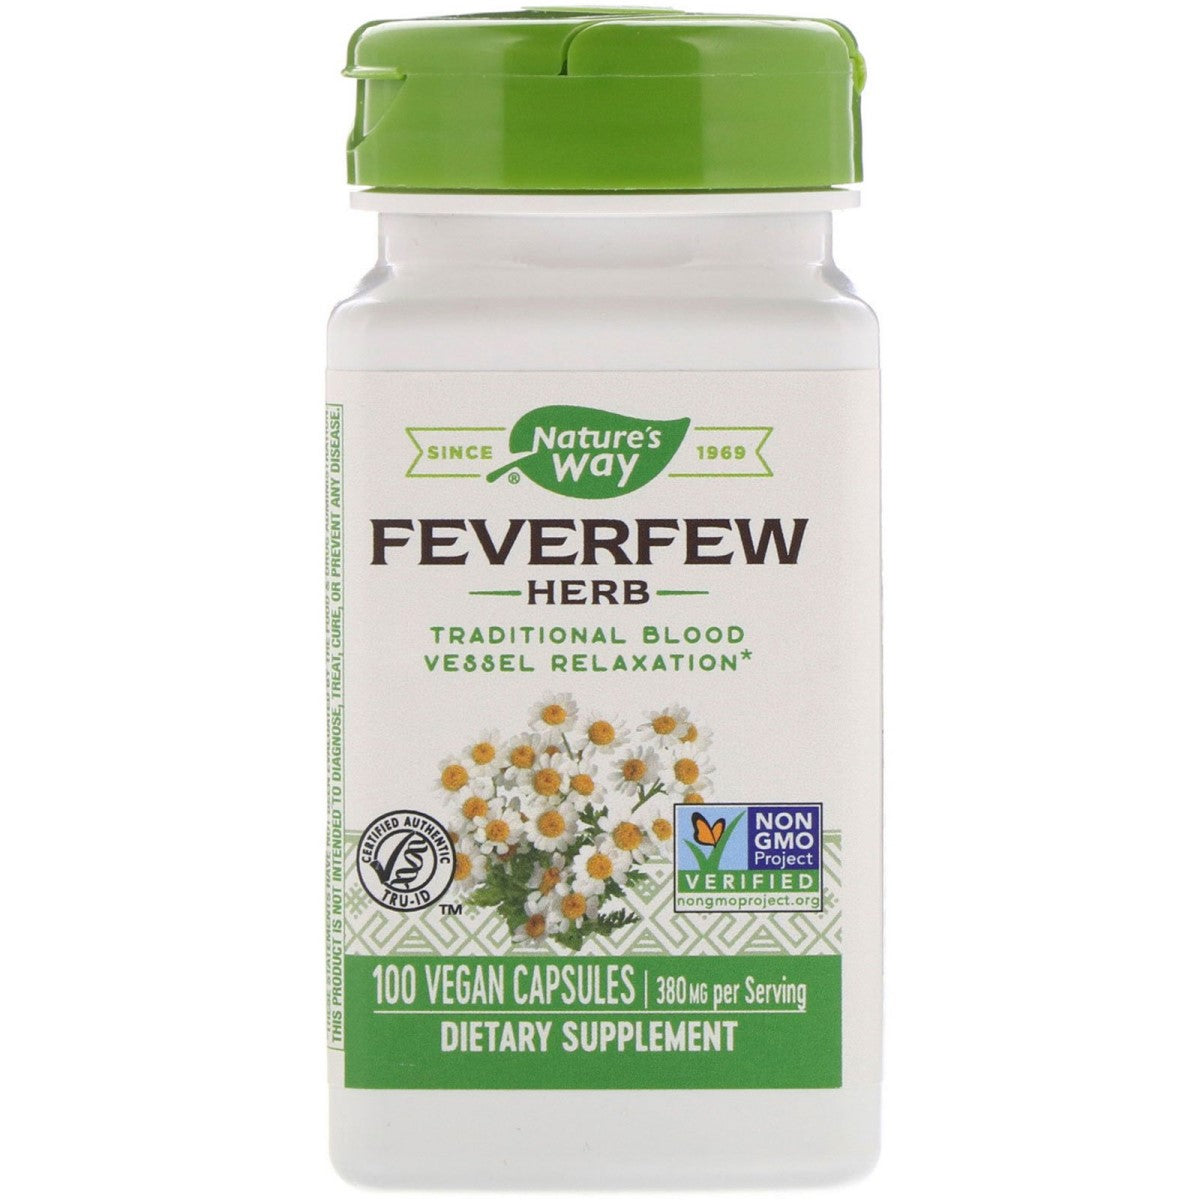 Primary image of Feverfew